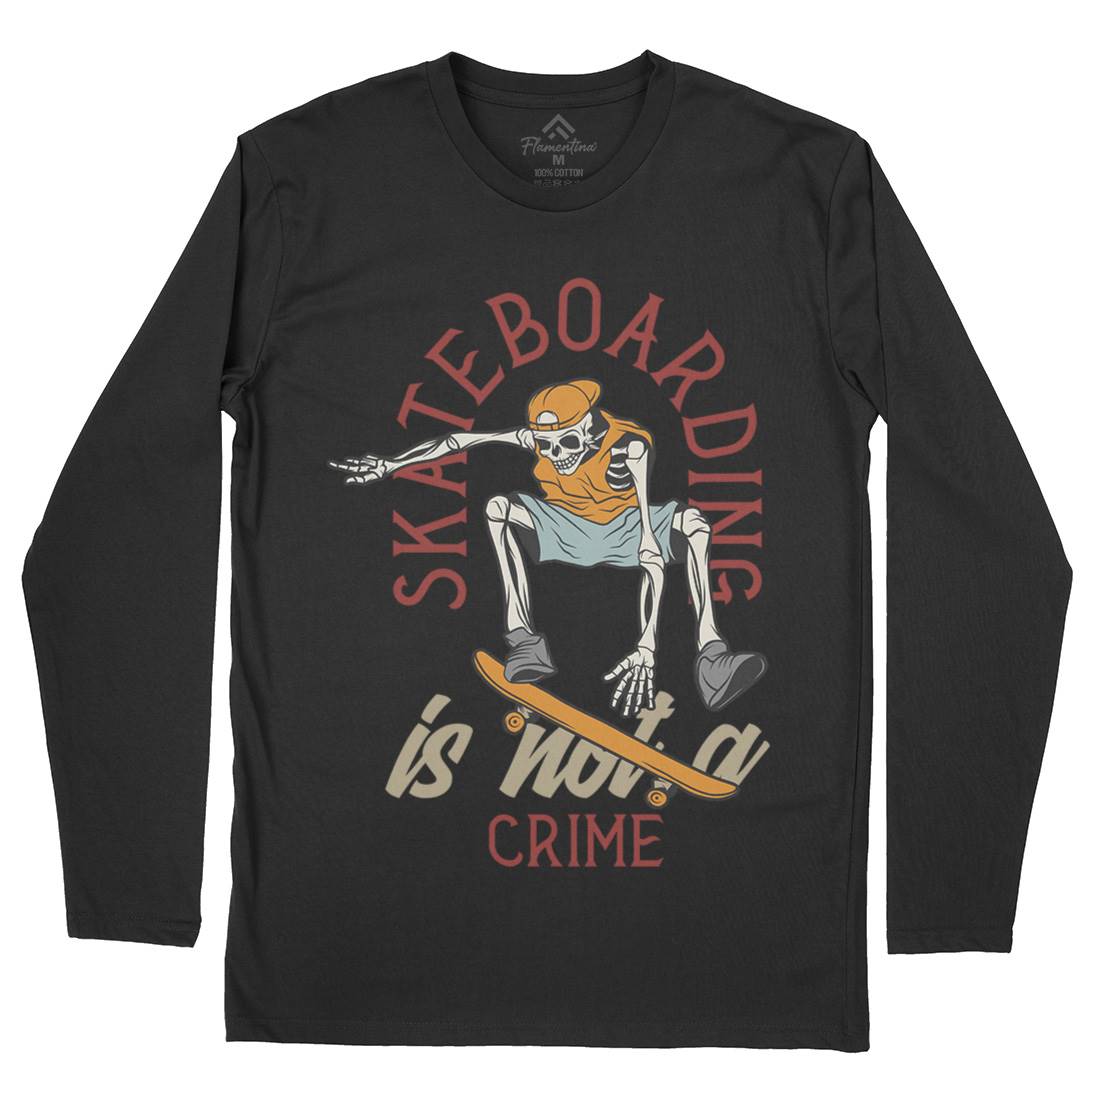 Skateboarding Crime Mens Long Sleeve T-Shirt Skate D975